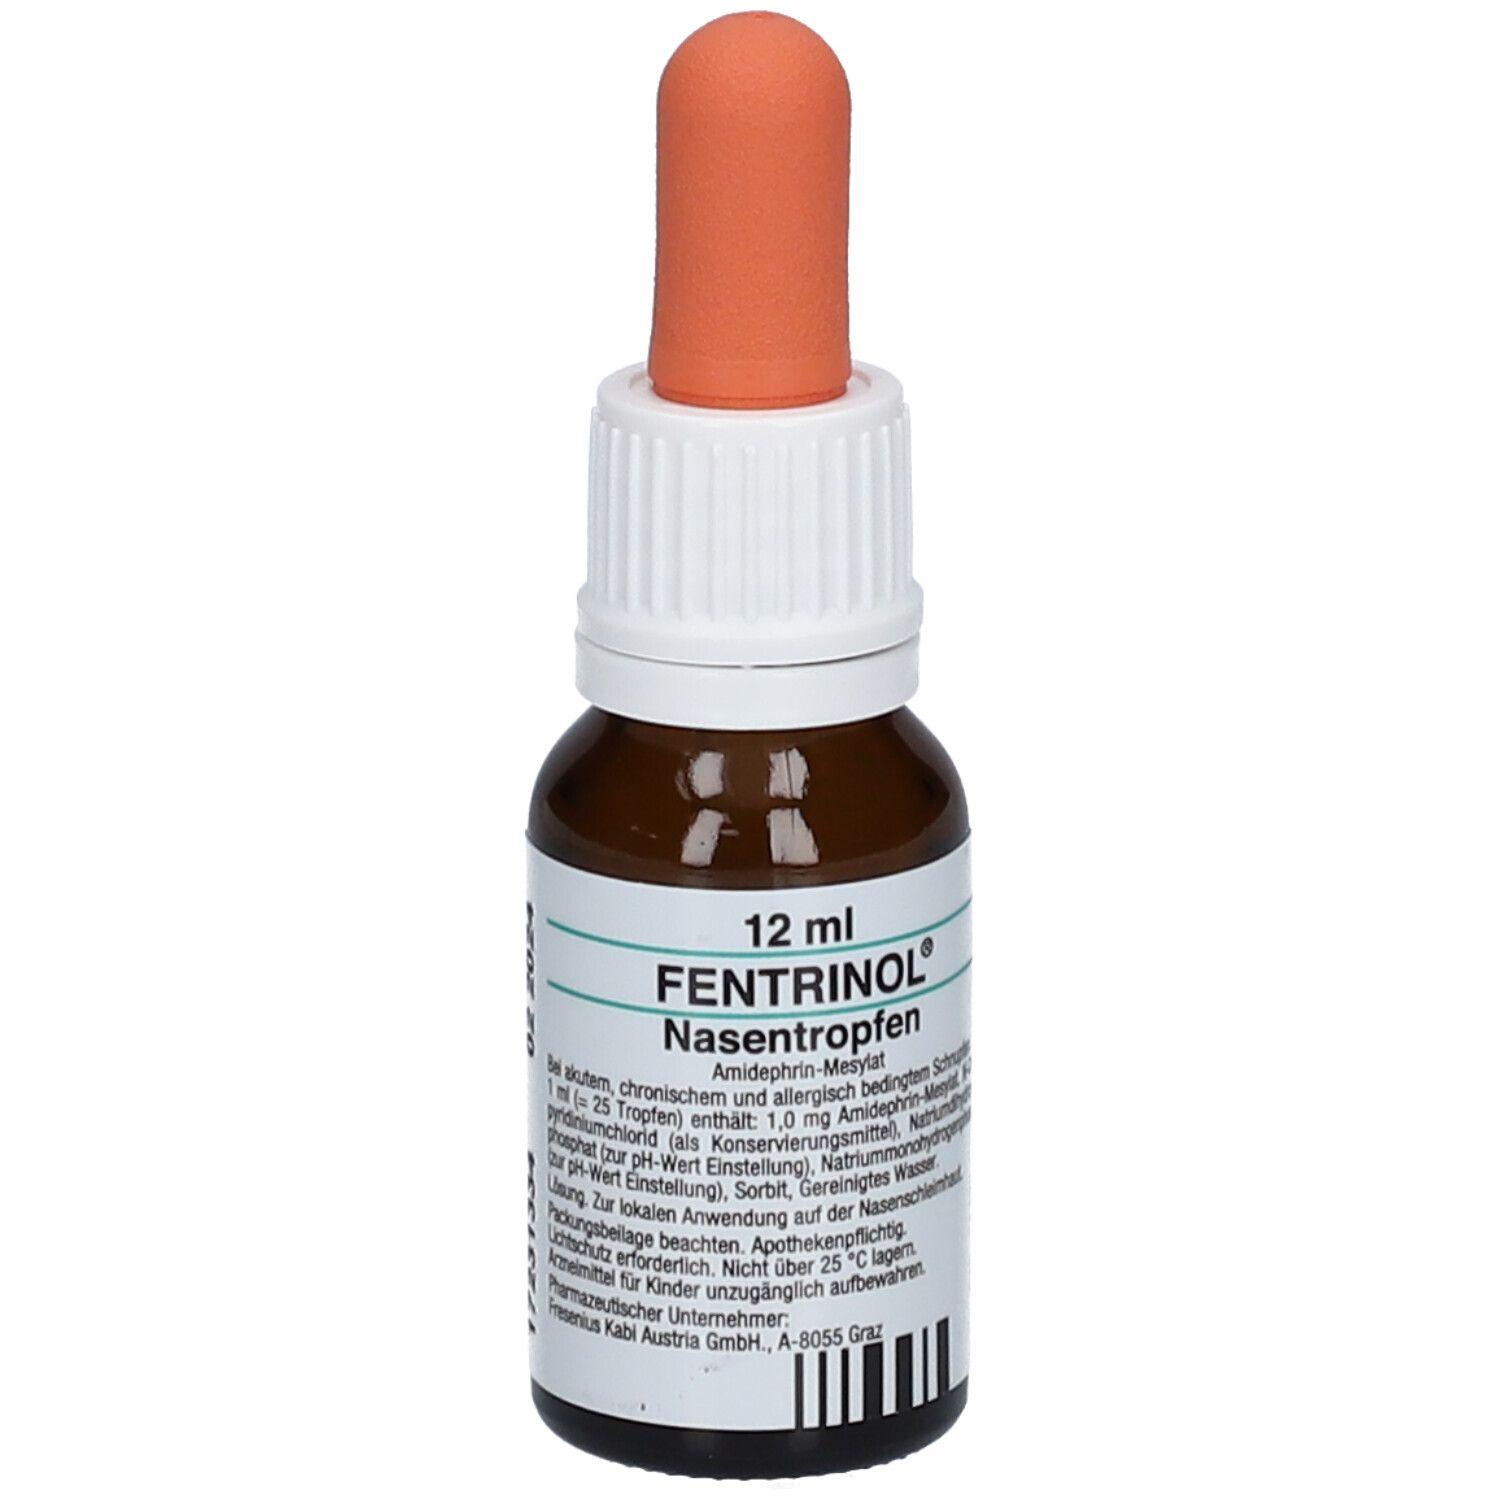 FENTRINOL® Nasentropfen